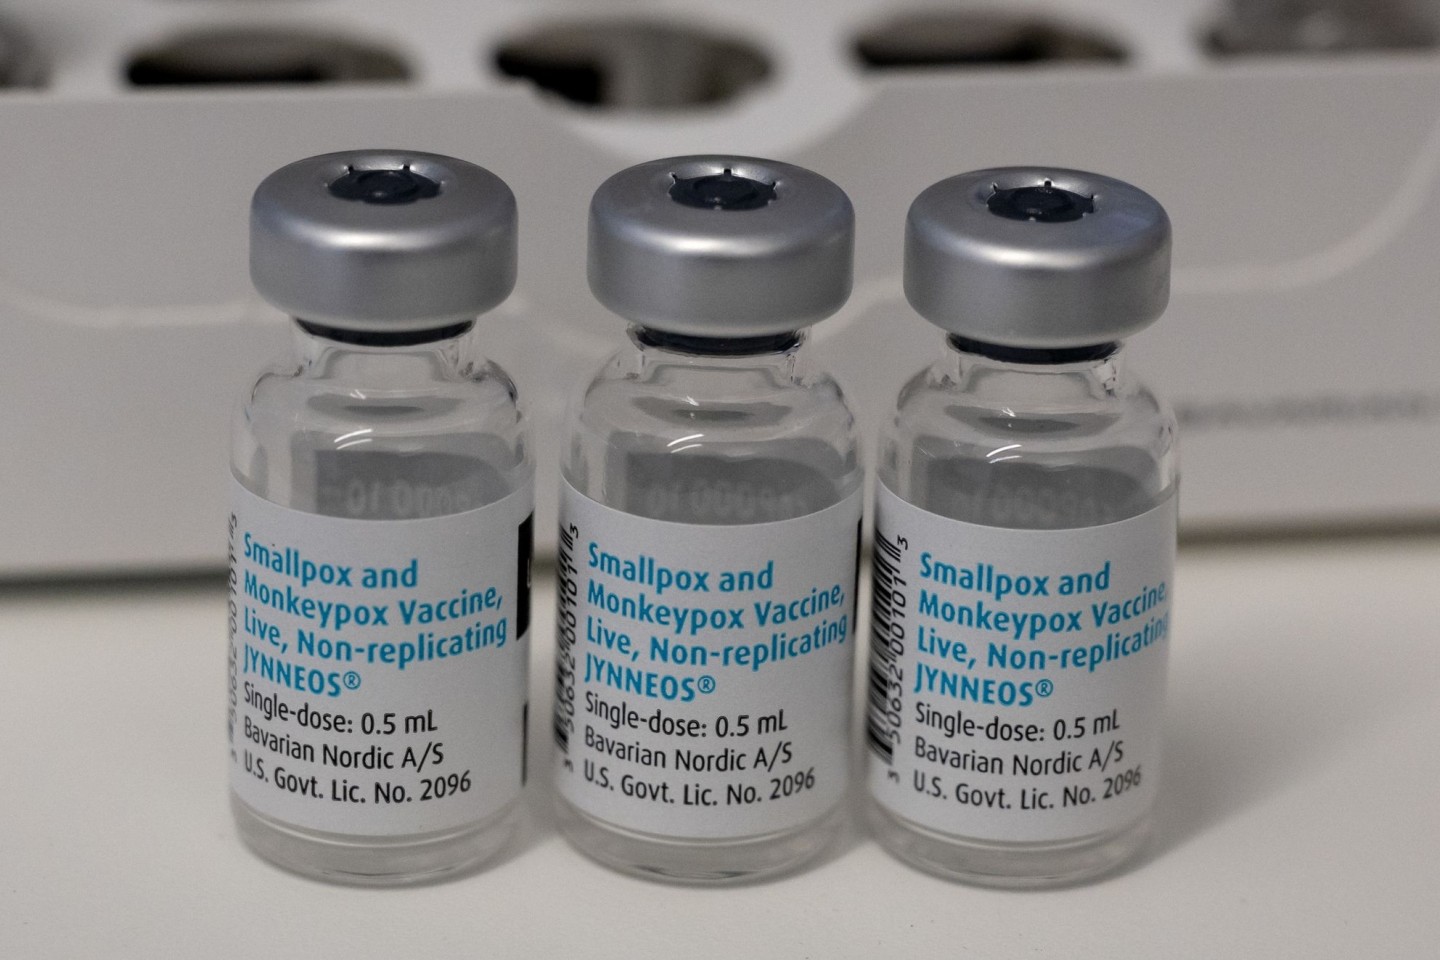 Leere Ampullen mit dem Impfstoff von Bavarian Nordic (Imvanex / Jynneos) gegen Affenpocken.